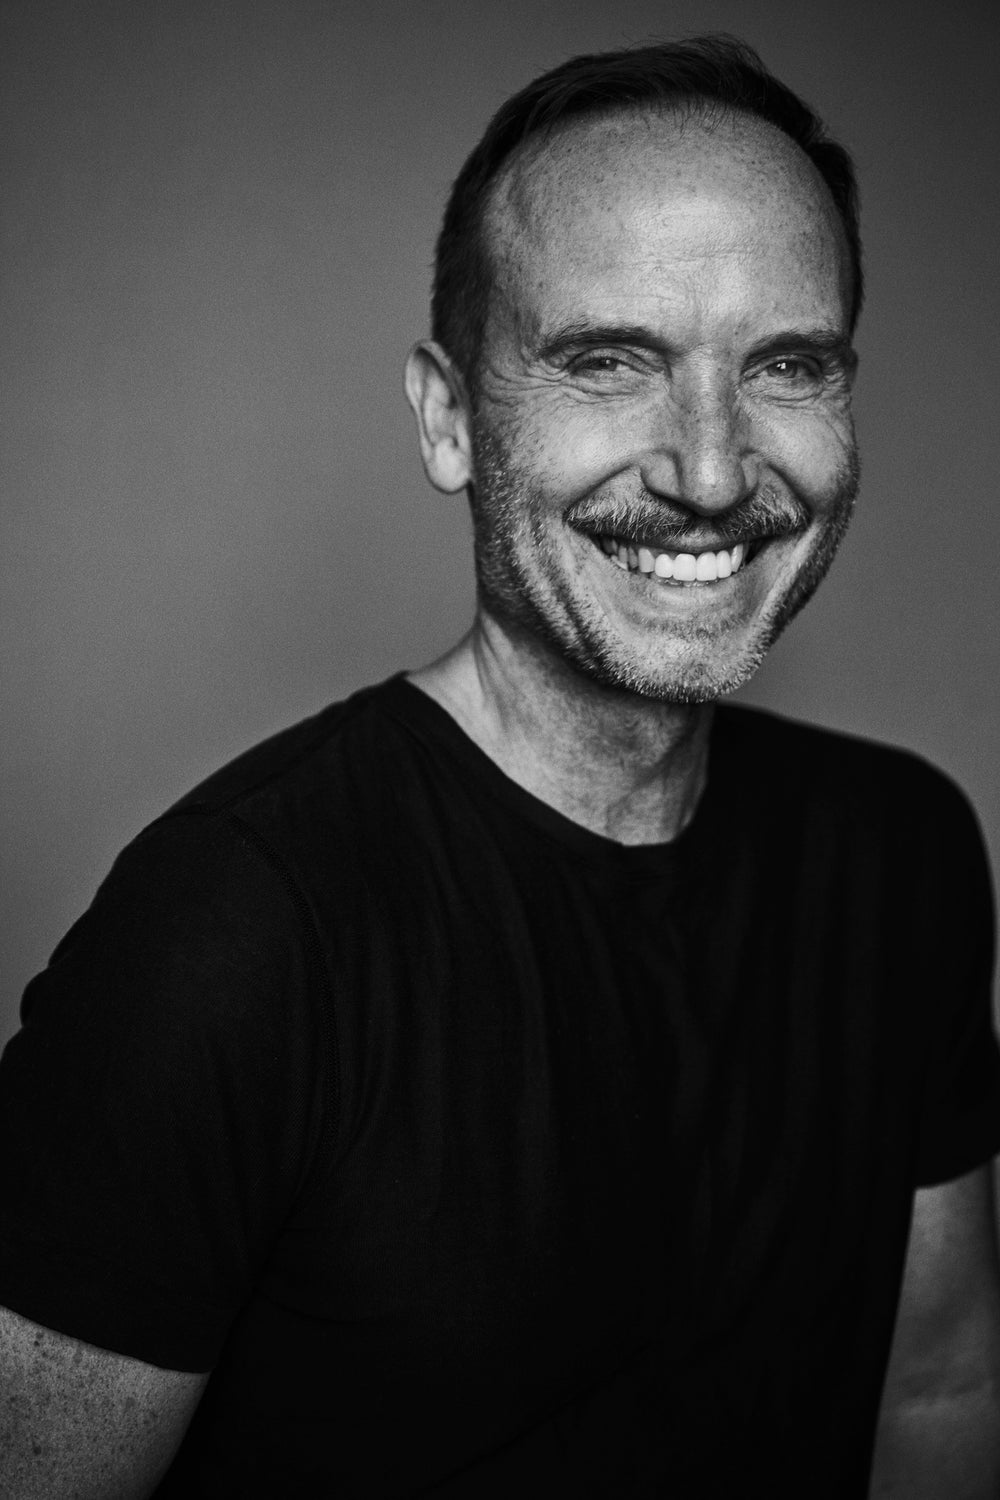 black and white portrait of Bernd keller smiling taken by Stefan Rappo he is wearing a black tshirt